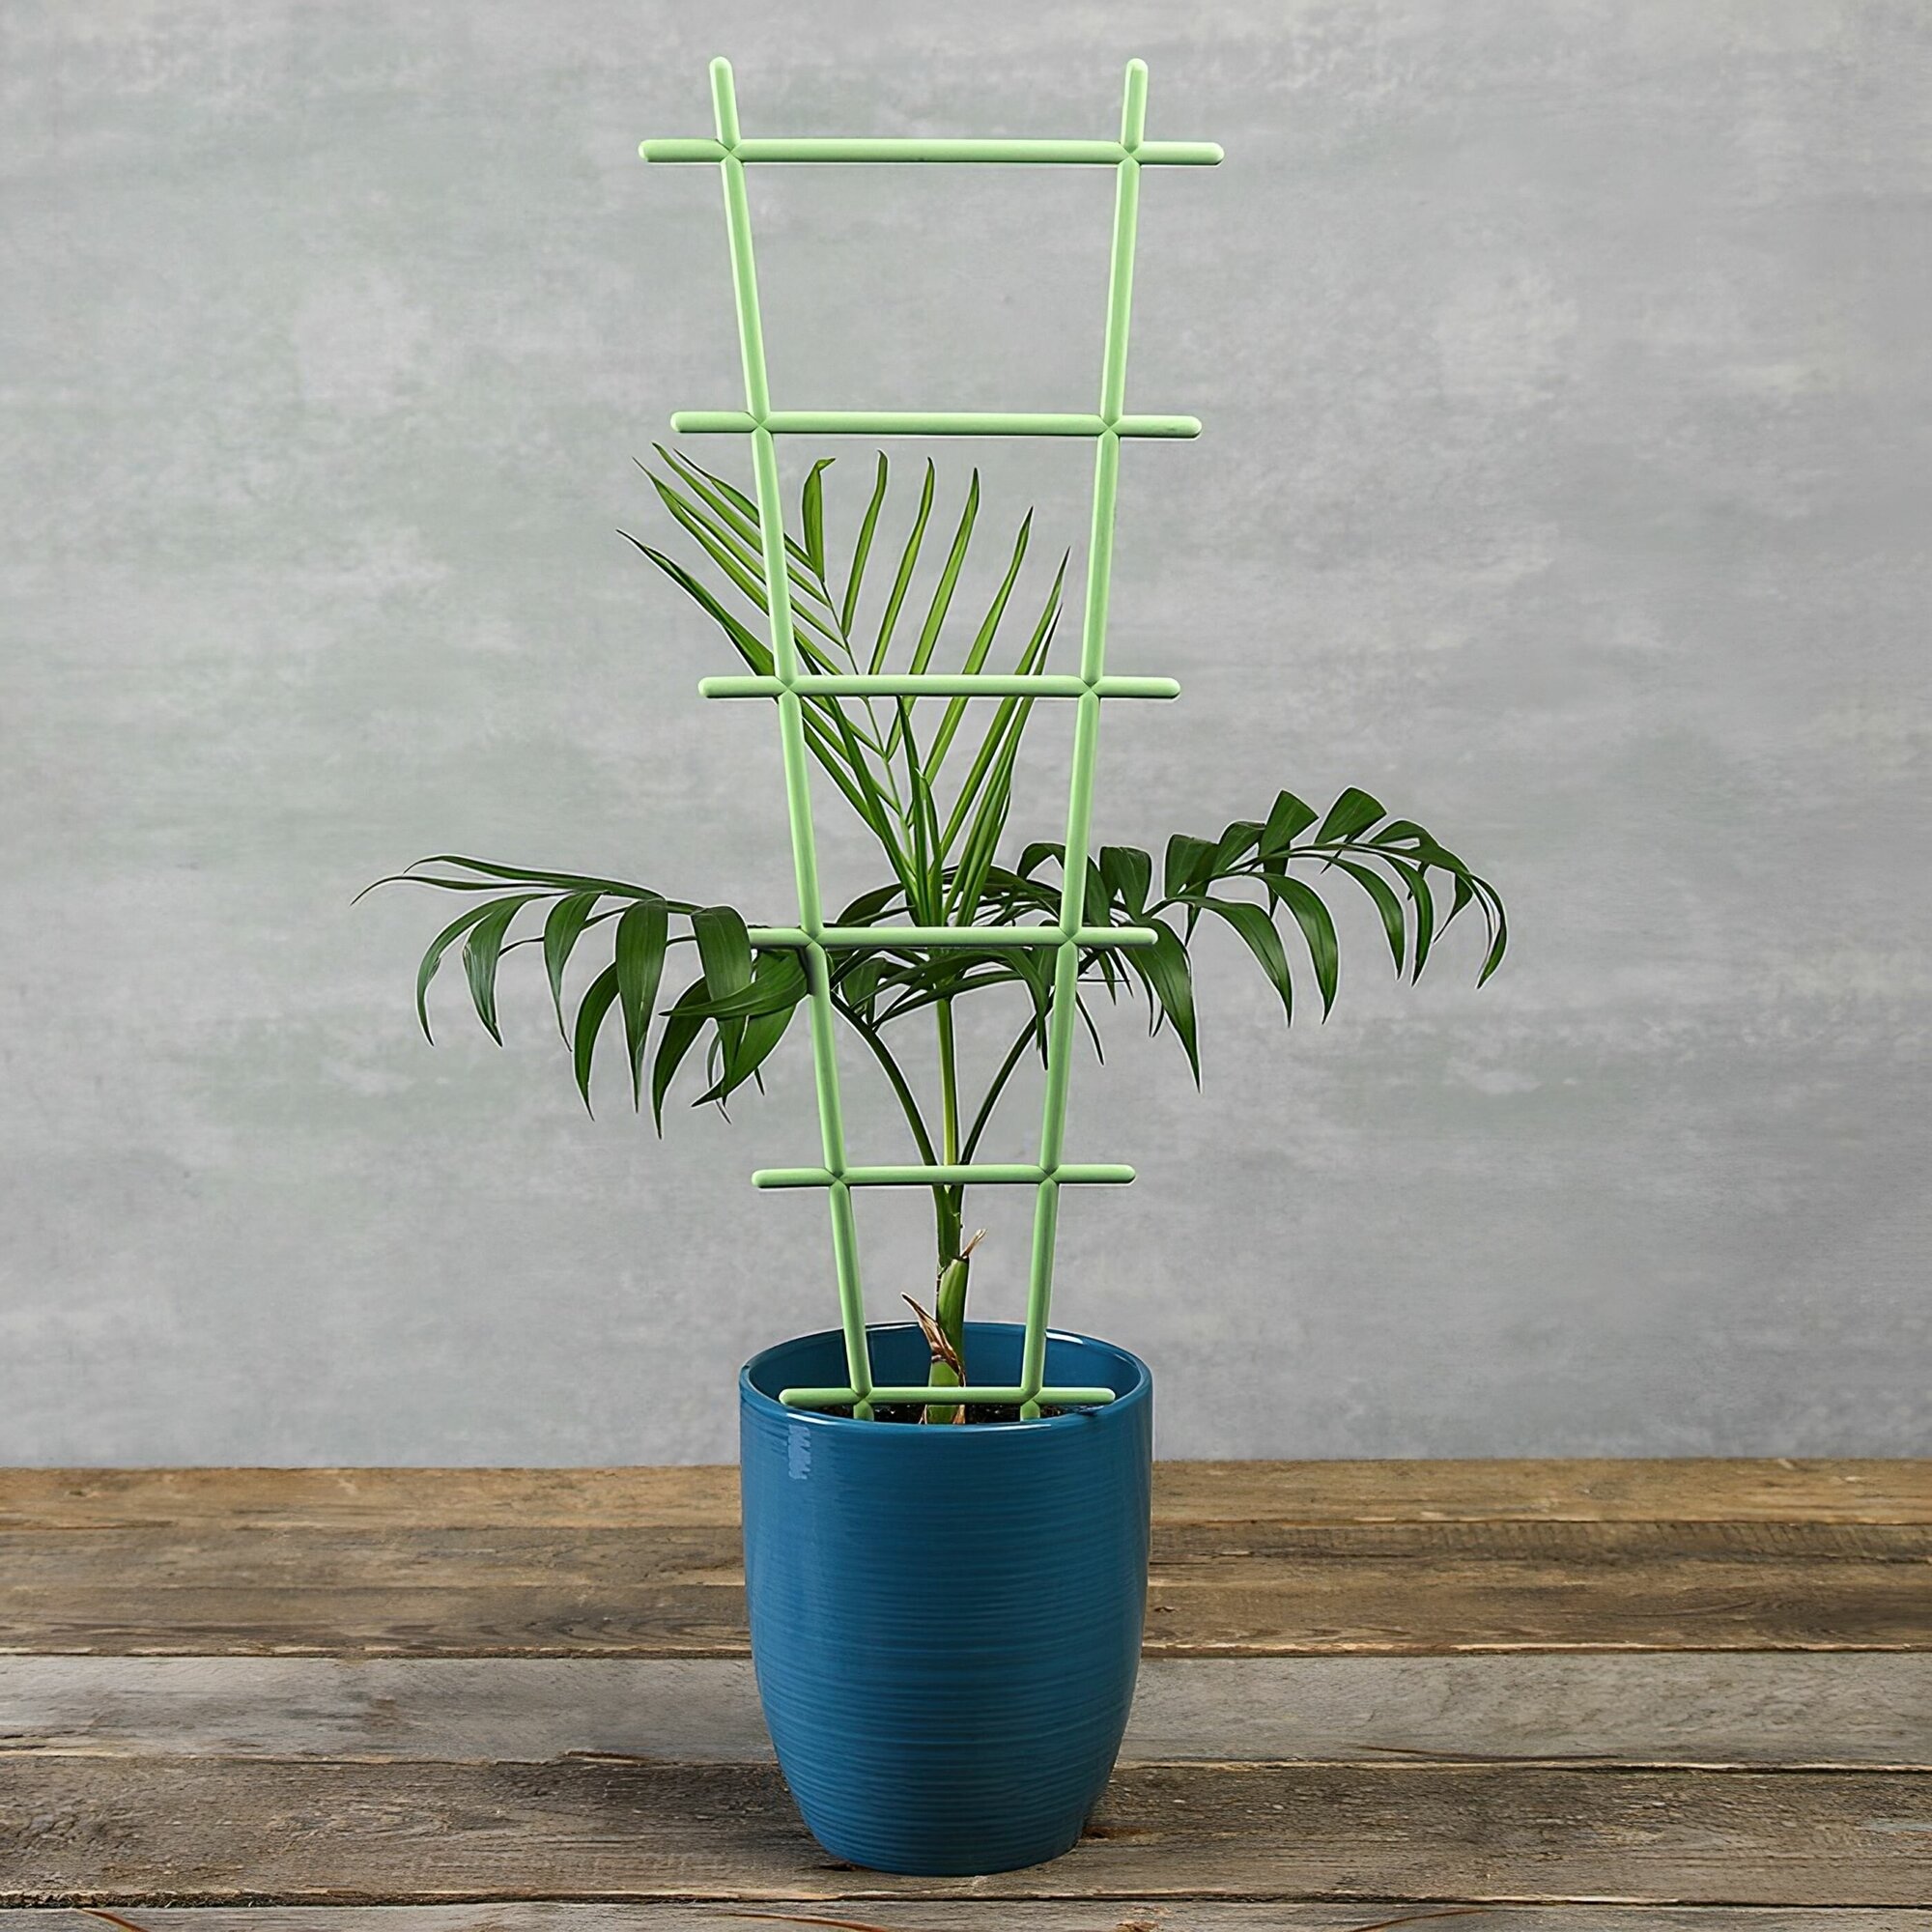 Поддержка-опора "Лесенка", 18.5x56 см, 5 шт - для поддержки растений. Можно использовать как для комнатных цветов, так и в саду, в огороде и на даче. - фотография № 5